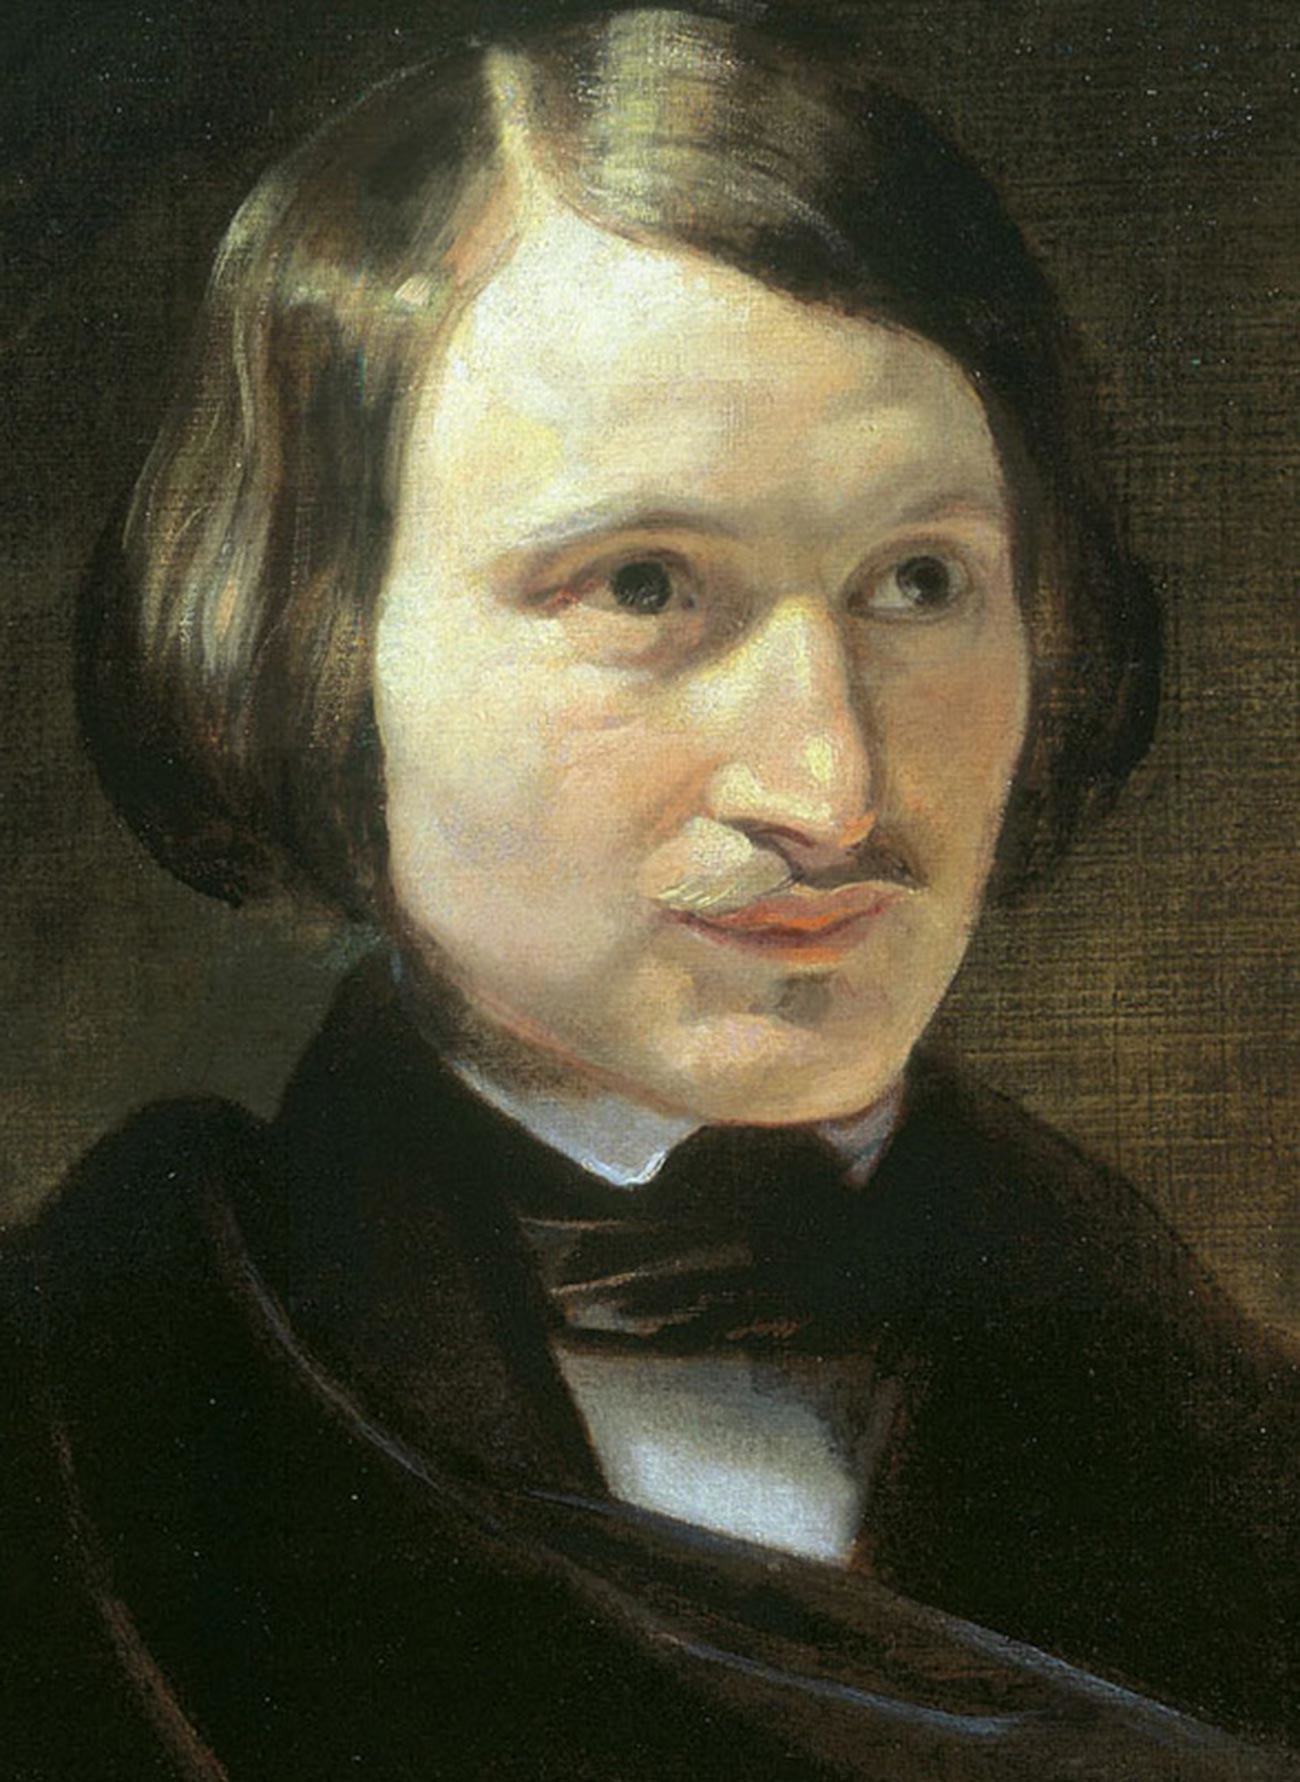 Nikolaj Gogol ritratto da Otto Friedrich Theodor von Möller
